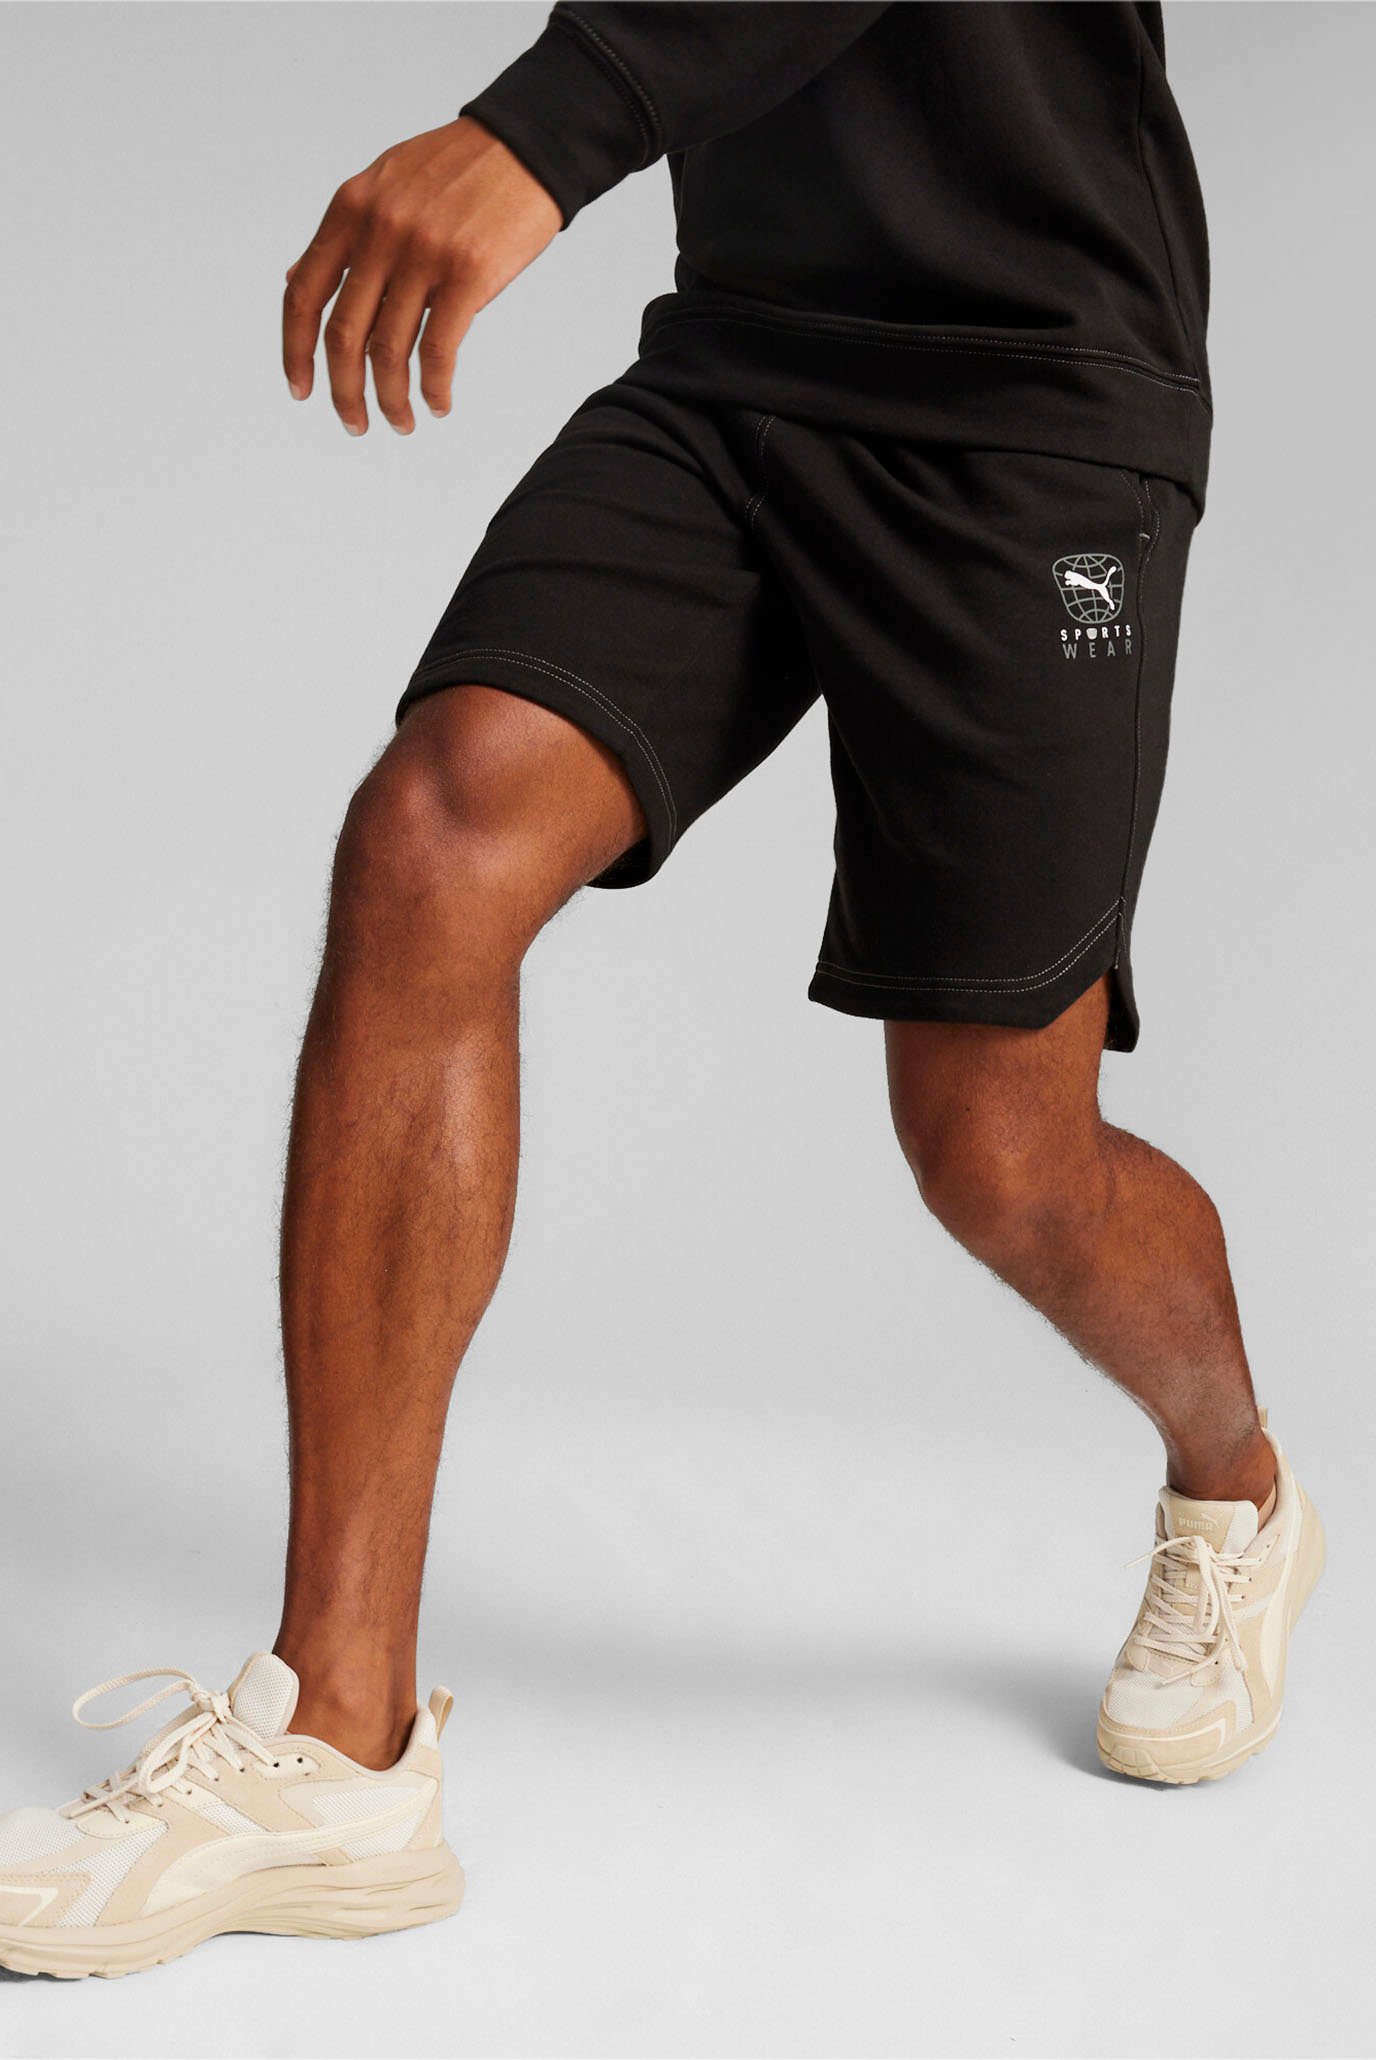 Мужские черные шорты BETTER SPORTSWEAR Men's Shorts 1